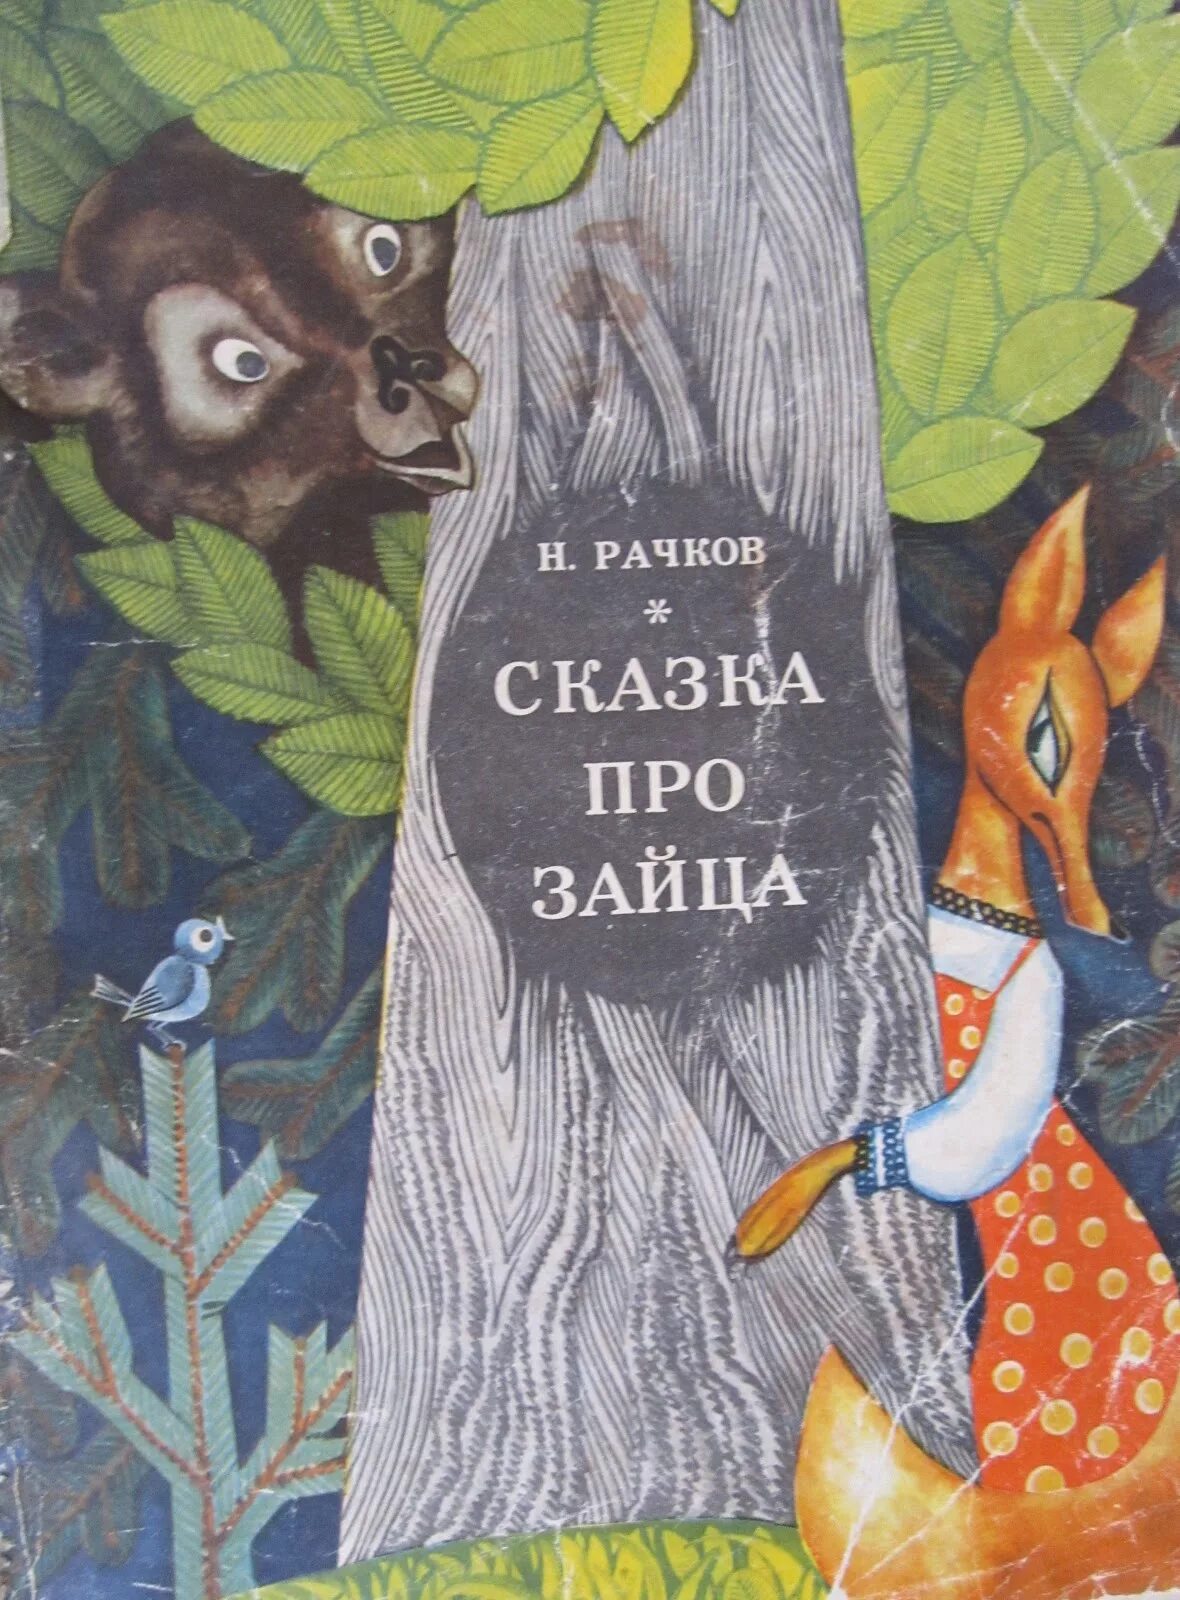 Книга про зайца. Сказка про звцуа. Зайцы в сказках. Сказки про Зайцев. Обложки книг сказки про зайчика.